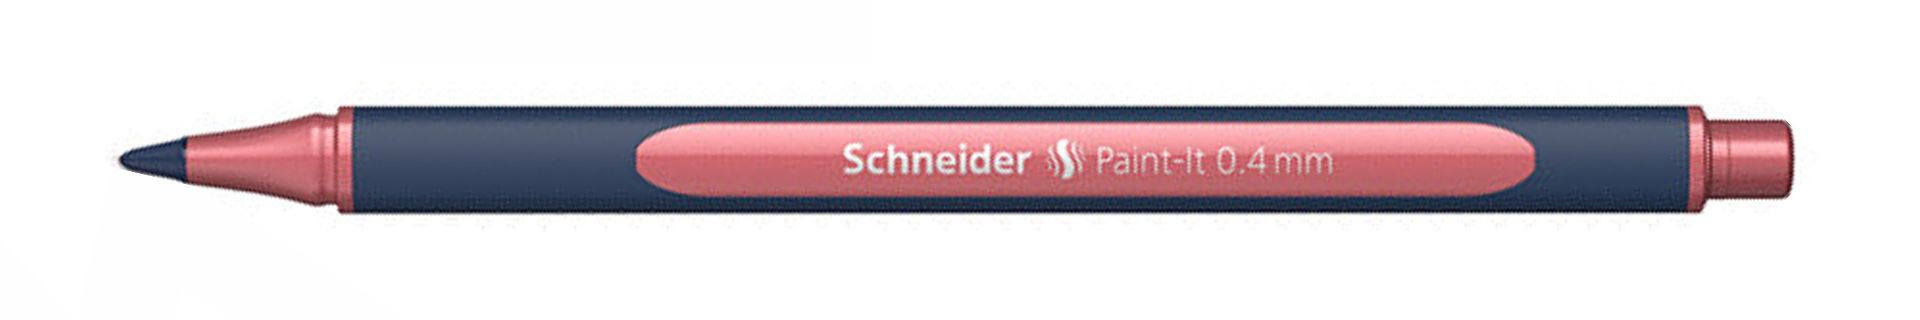 Marker Schneider Paint-It Metallic Rollerball